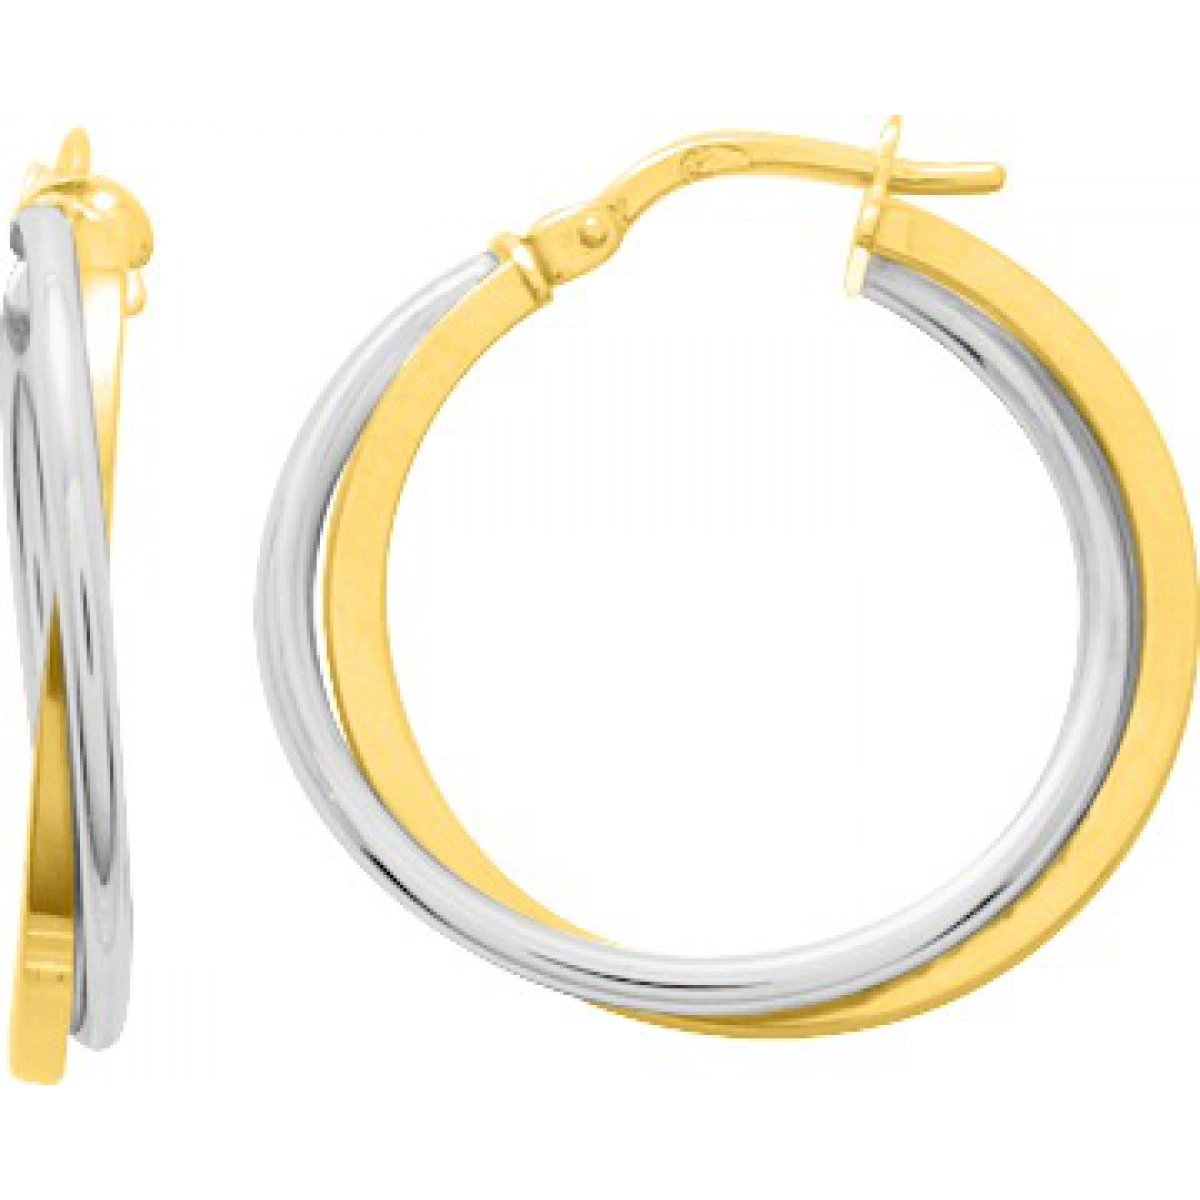 Hoops earrings pair 18K 2TG  Lua Blanca  3538.4G.0